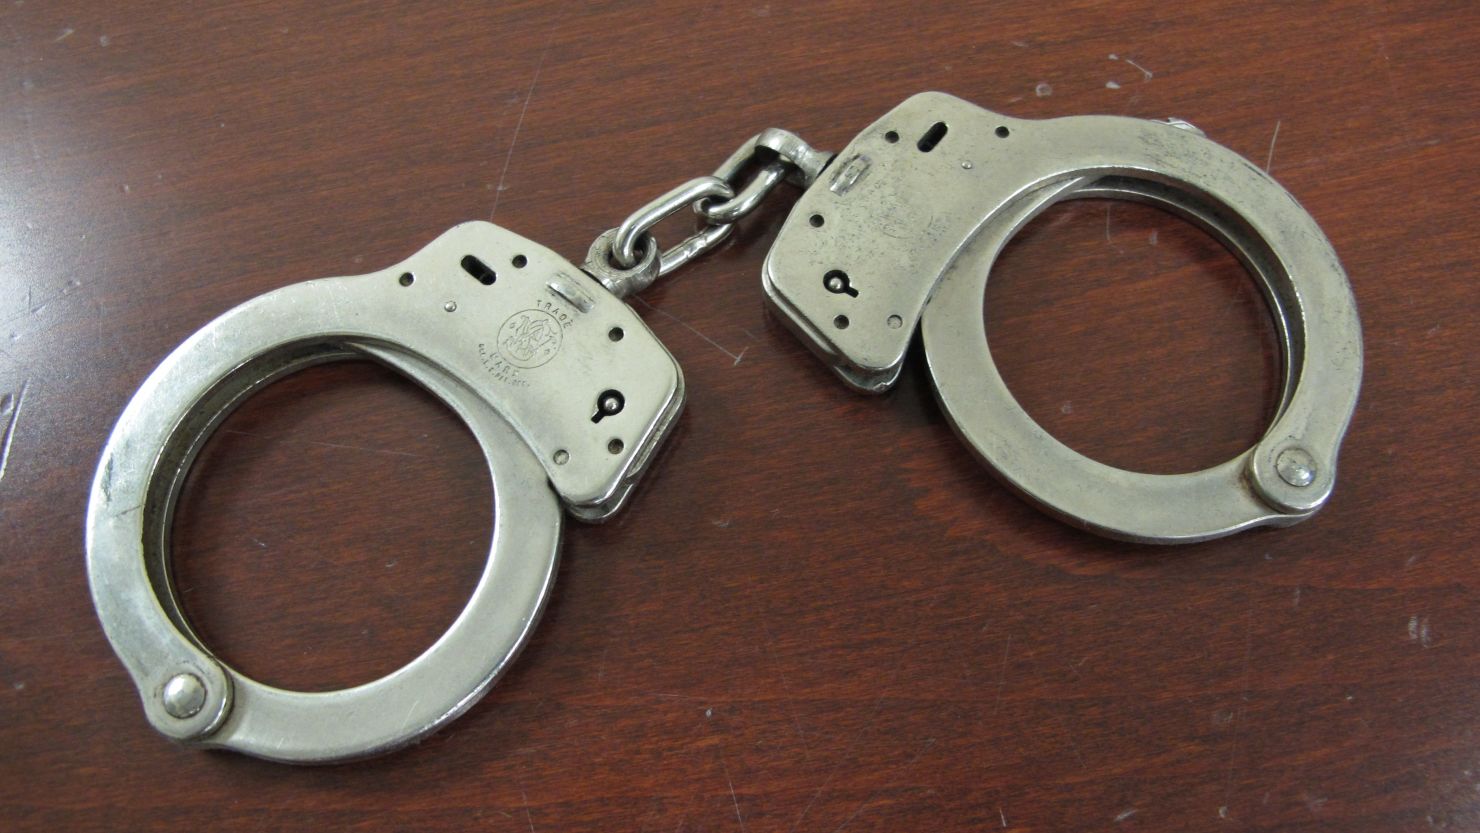 CNNE 274438 - handcuffs